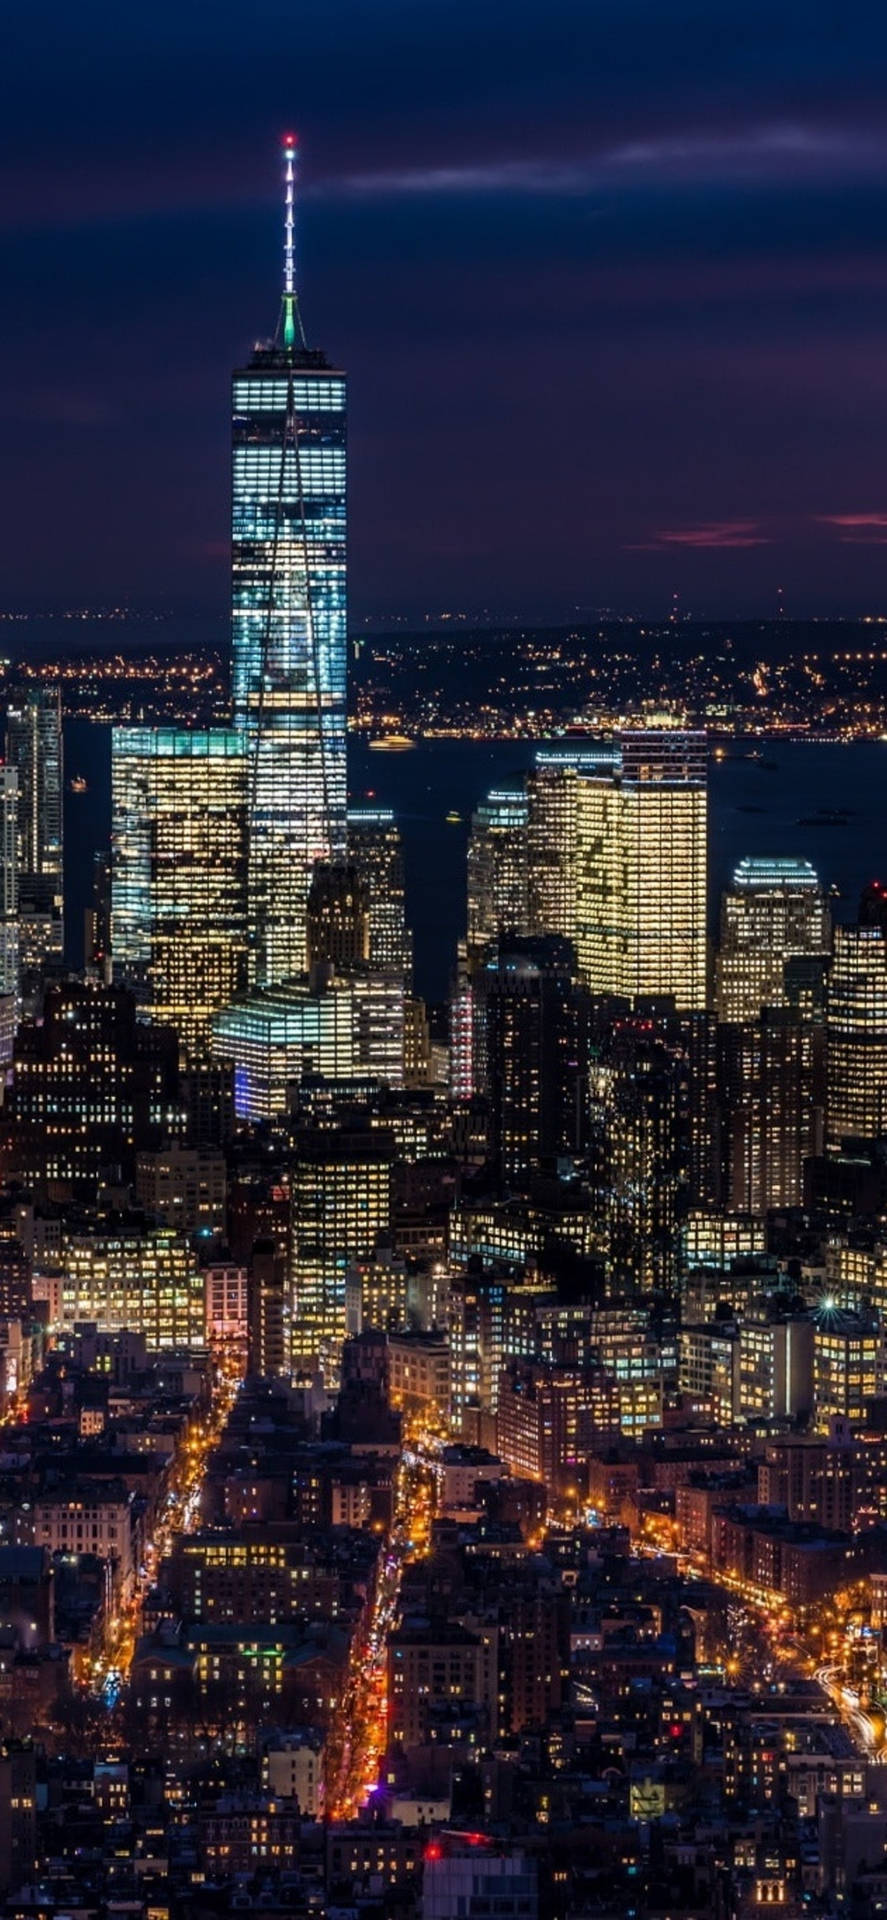 New York City Iphone X Night View